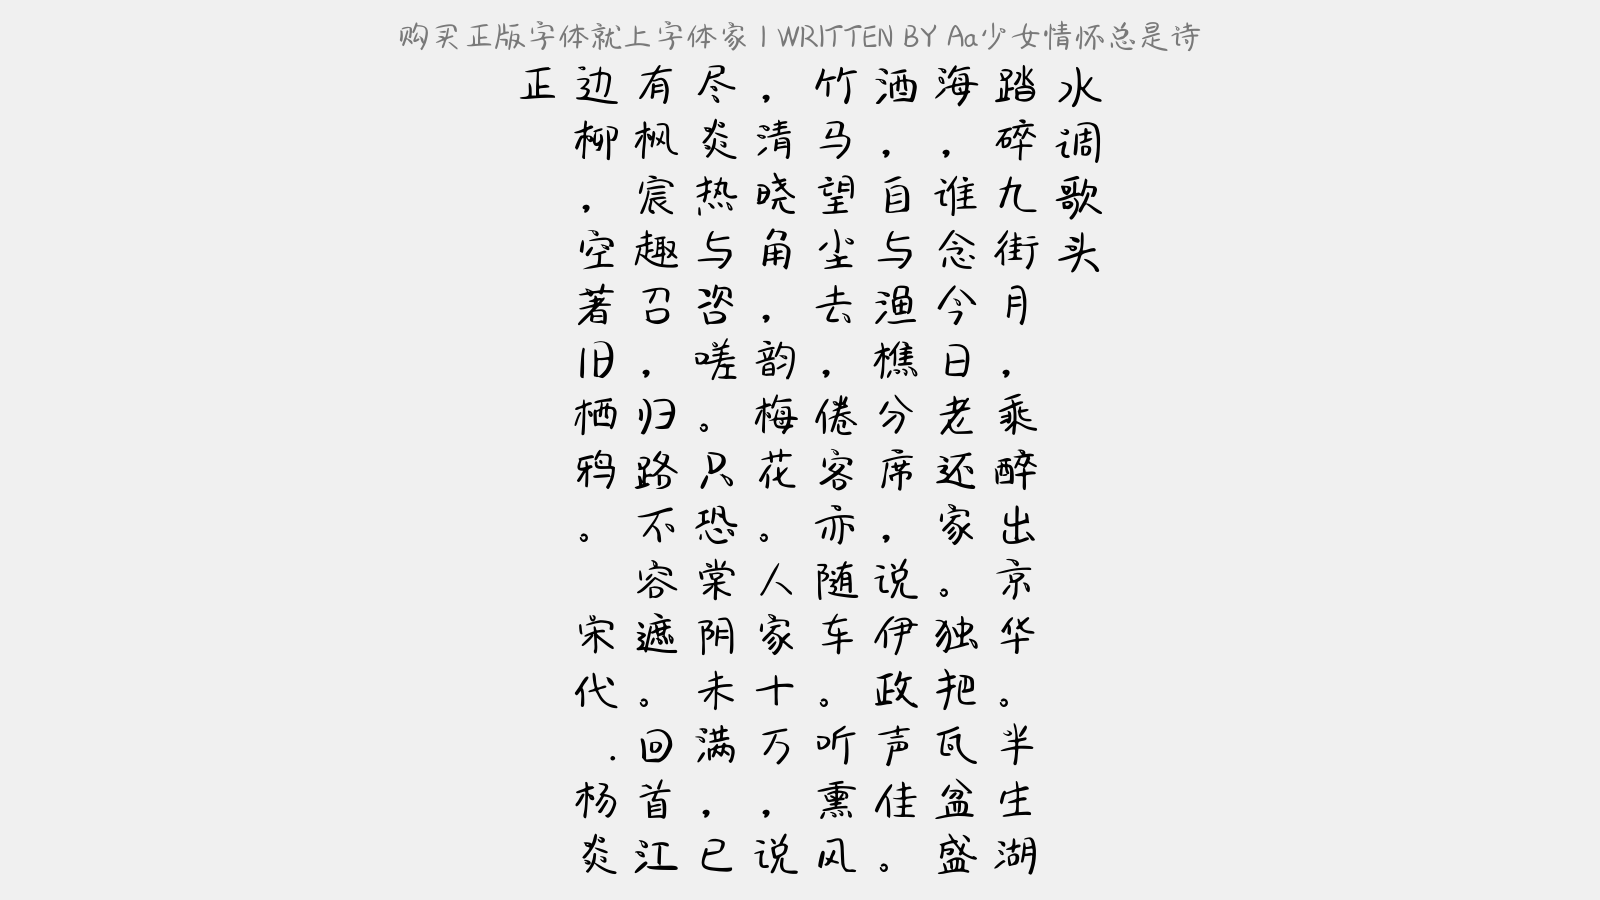 少女情怀总是诗免费字体下载 中文字体免费下载尽在字体家